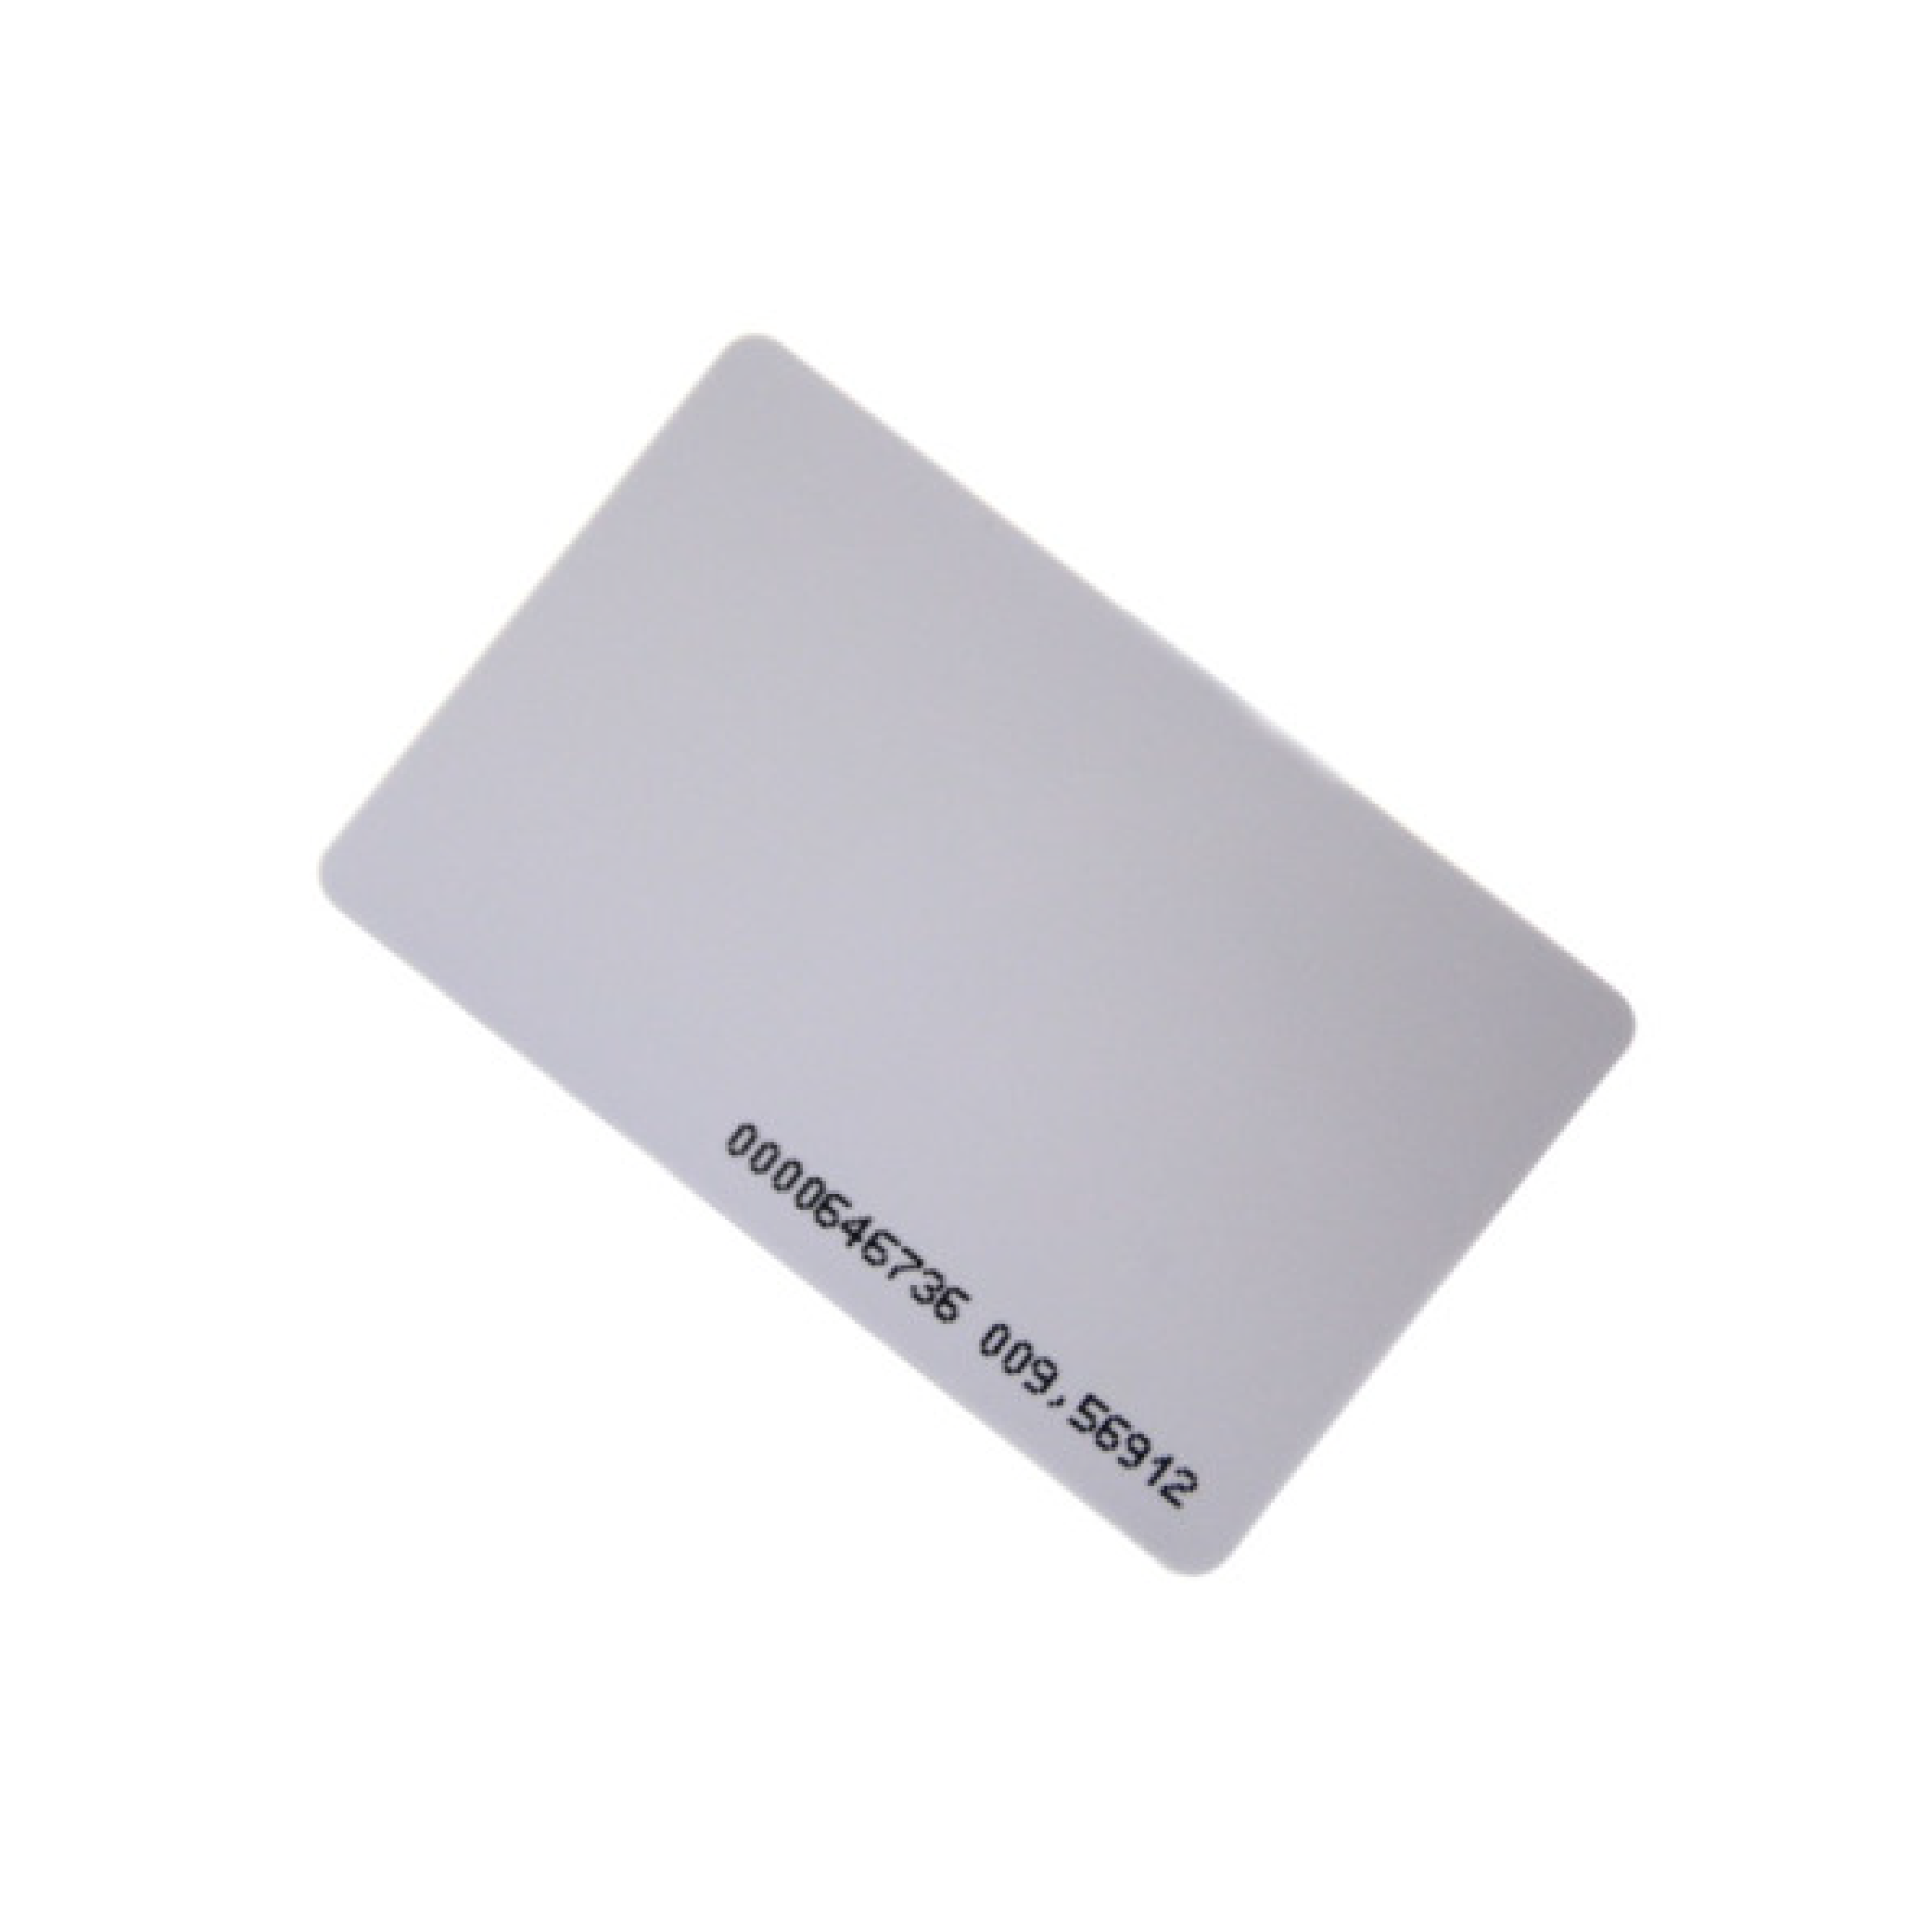 Tarjeta RFID IC 13.56mhz delgada con número impreso. sin perforación. imprimible. IC Thin Card.